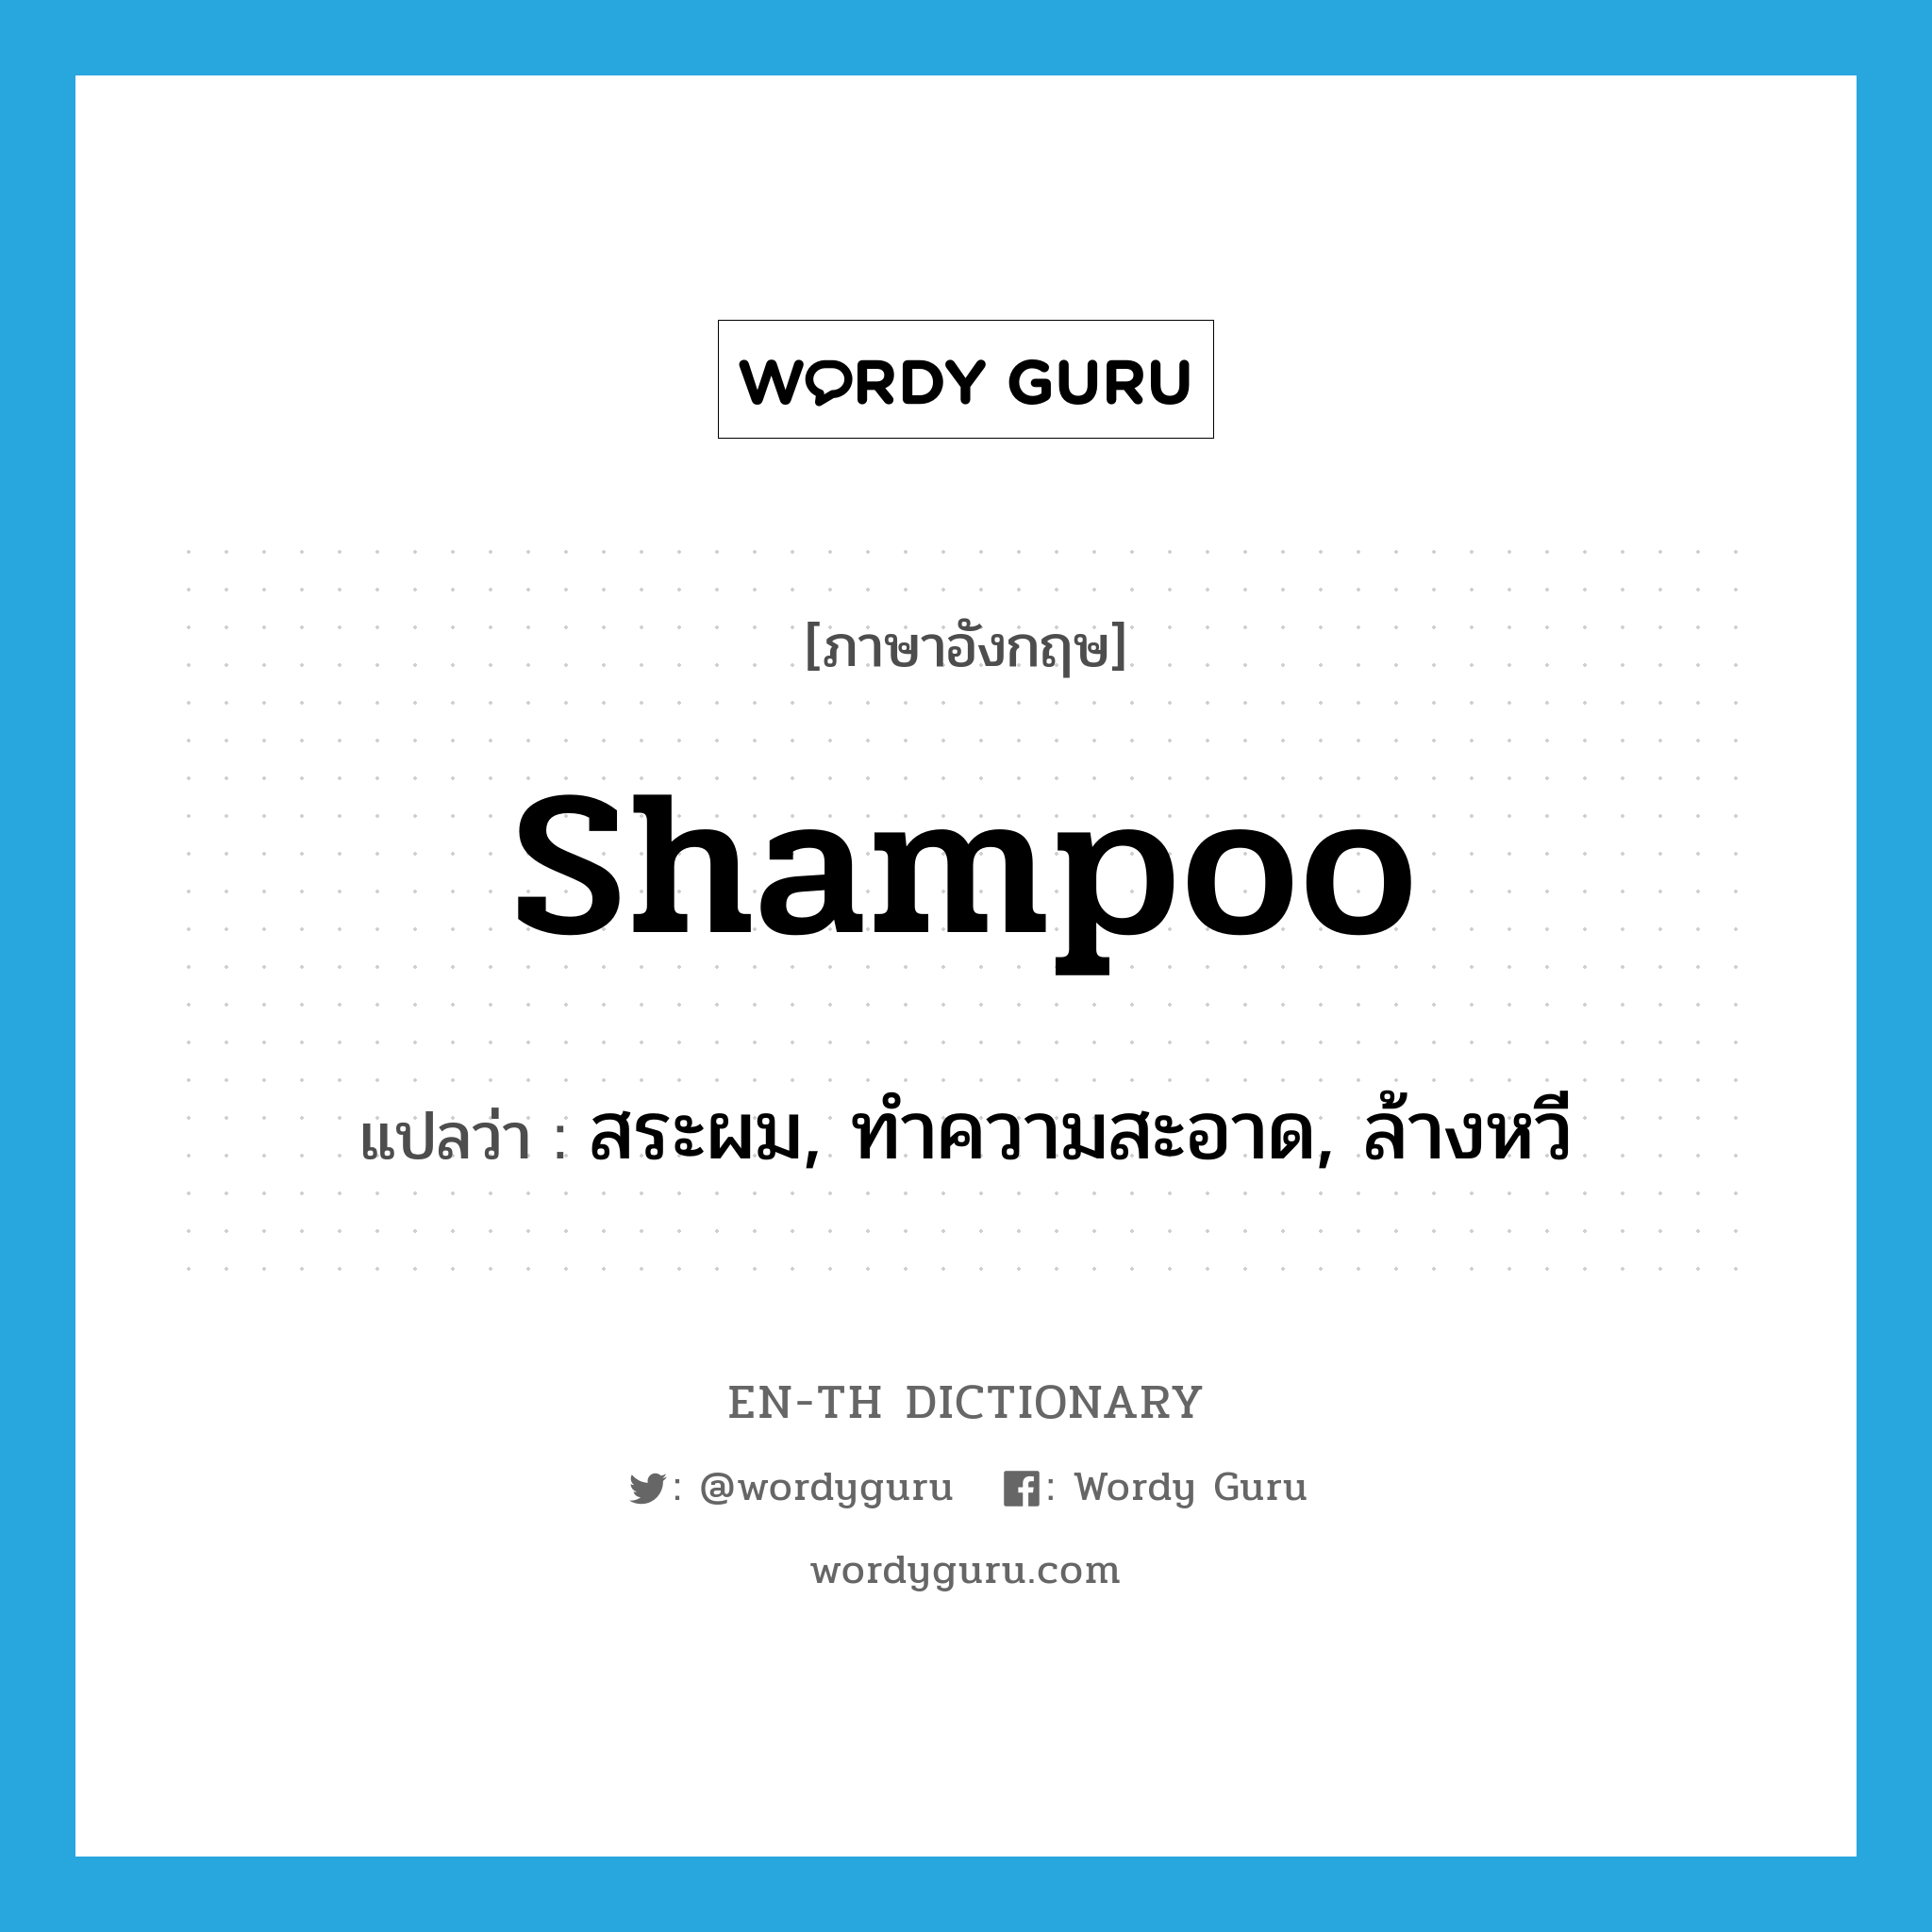 สระผม, ทำความสะอาด, ล้างหวี ภาษาอังกฤษ?, คำศัพท์ภาษาอังกฤษ สระผม, ทำความสะอาด, ล้างหวี แปลว่า shampoo ประเภท VT หมวด VT